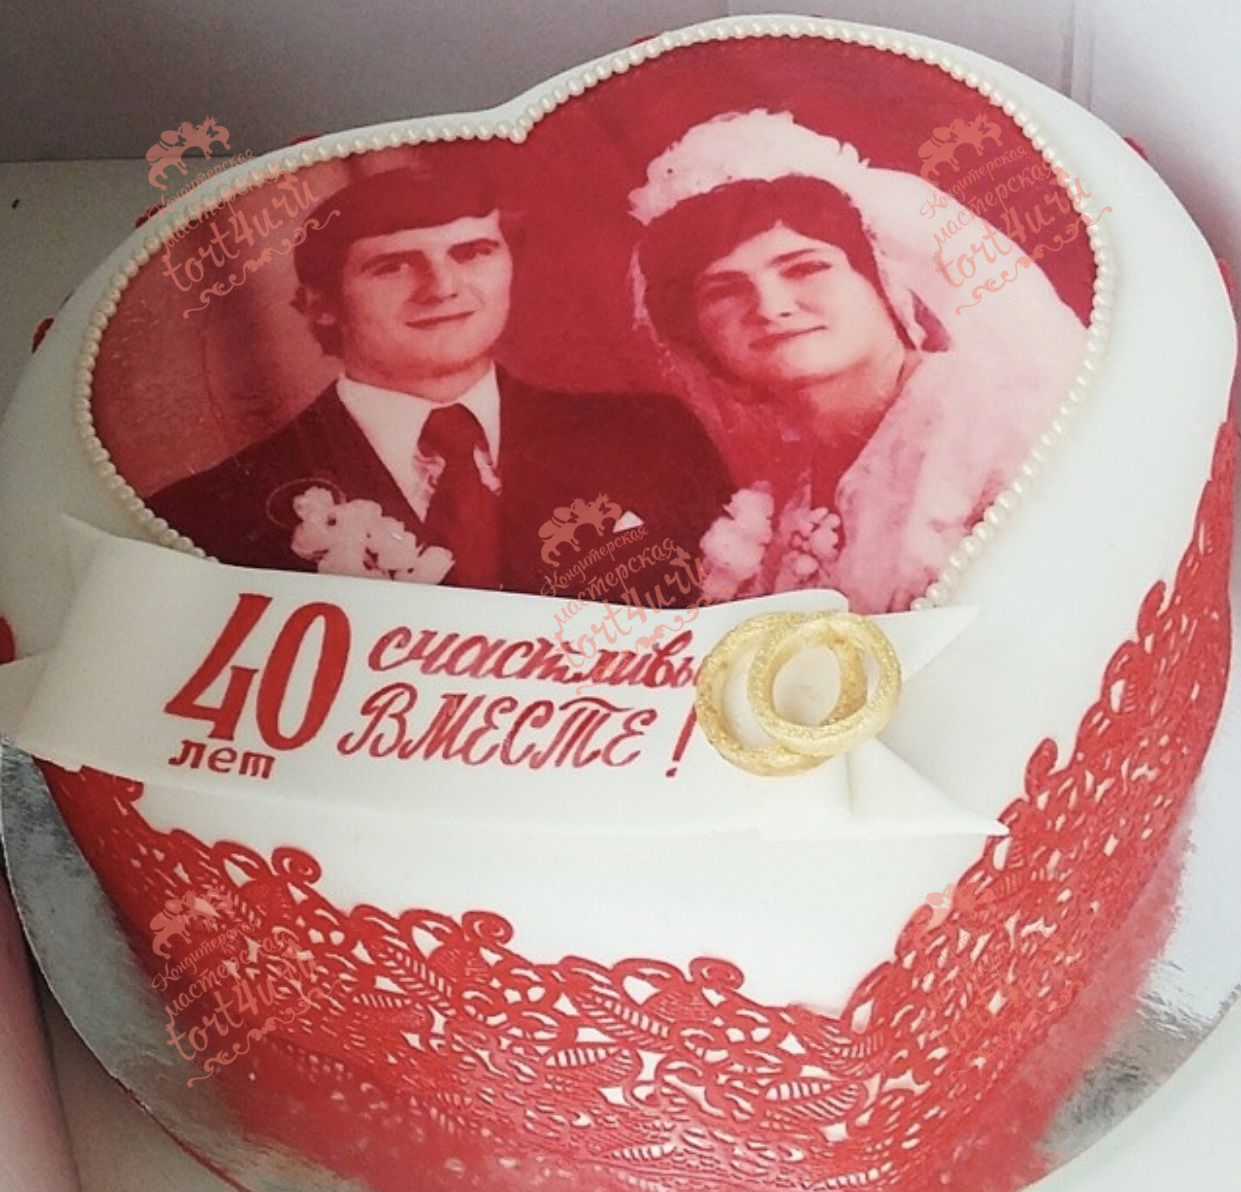 Свадьба 40 лет совместной жизни что подарить. традиции празднования рубиновой свадьбы. одежда супругов на рубиновой свадьбе